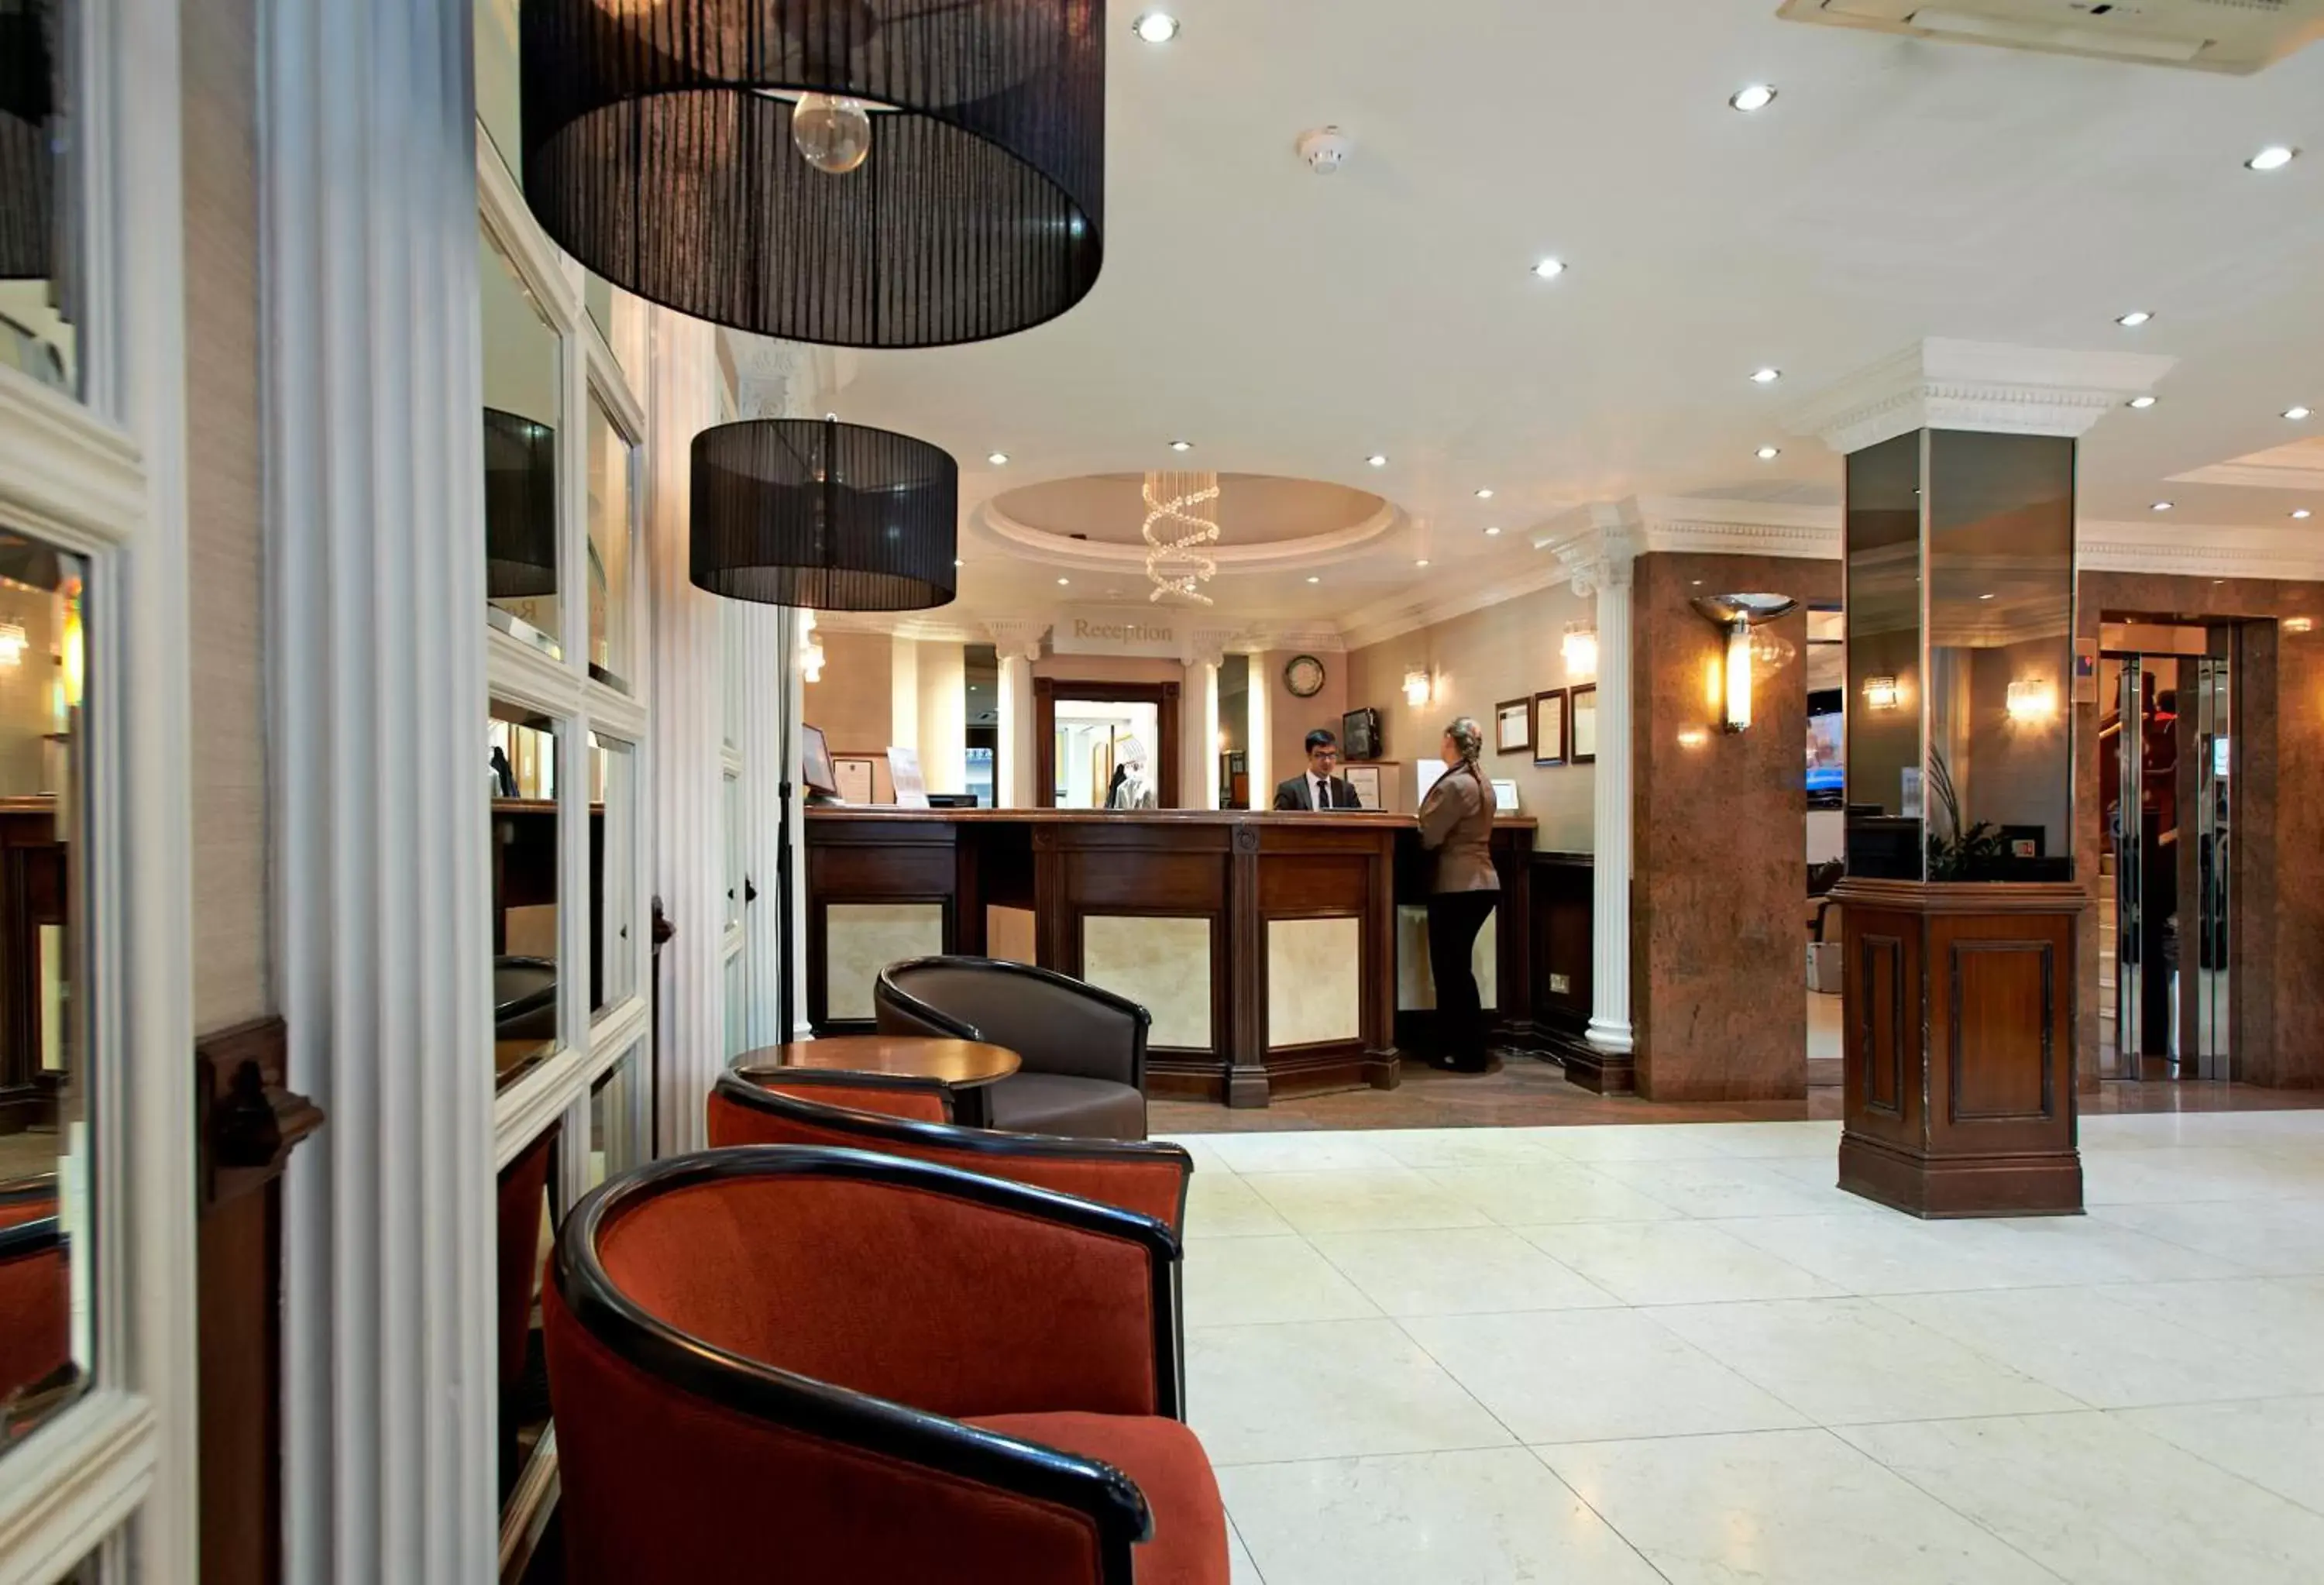 Lobby or reception, Lobby/Reception in Royal Eagle Hotel